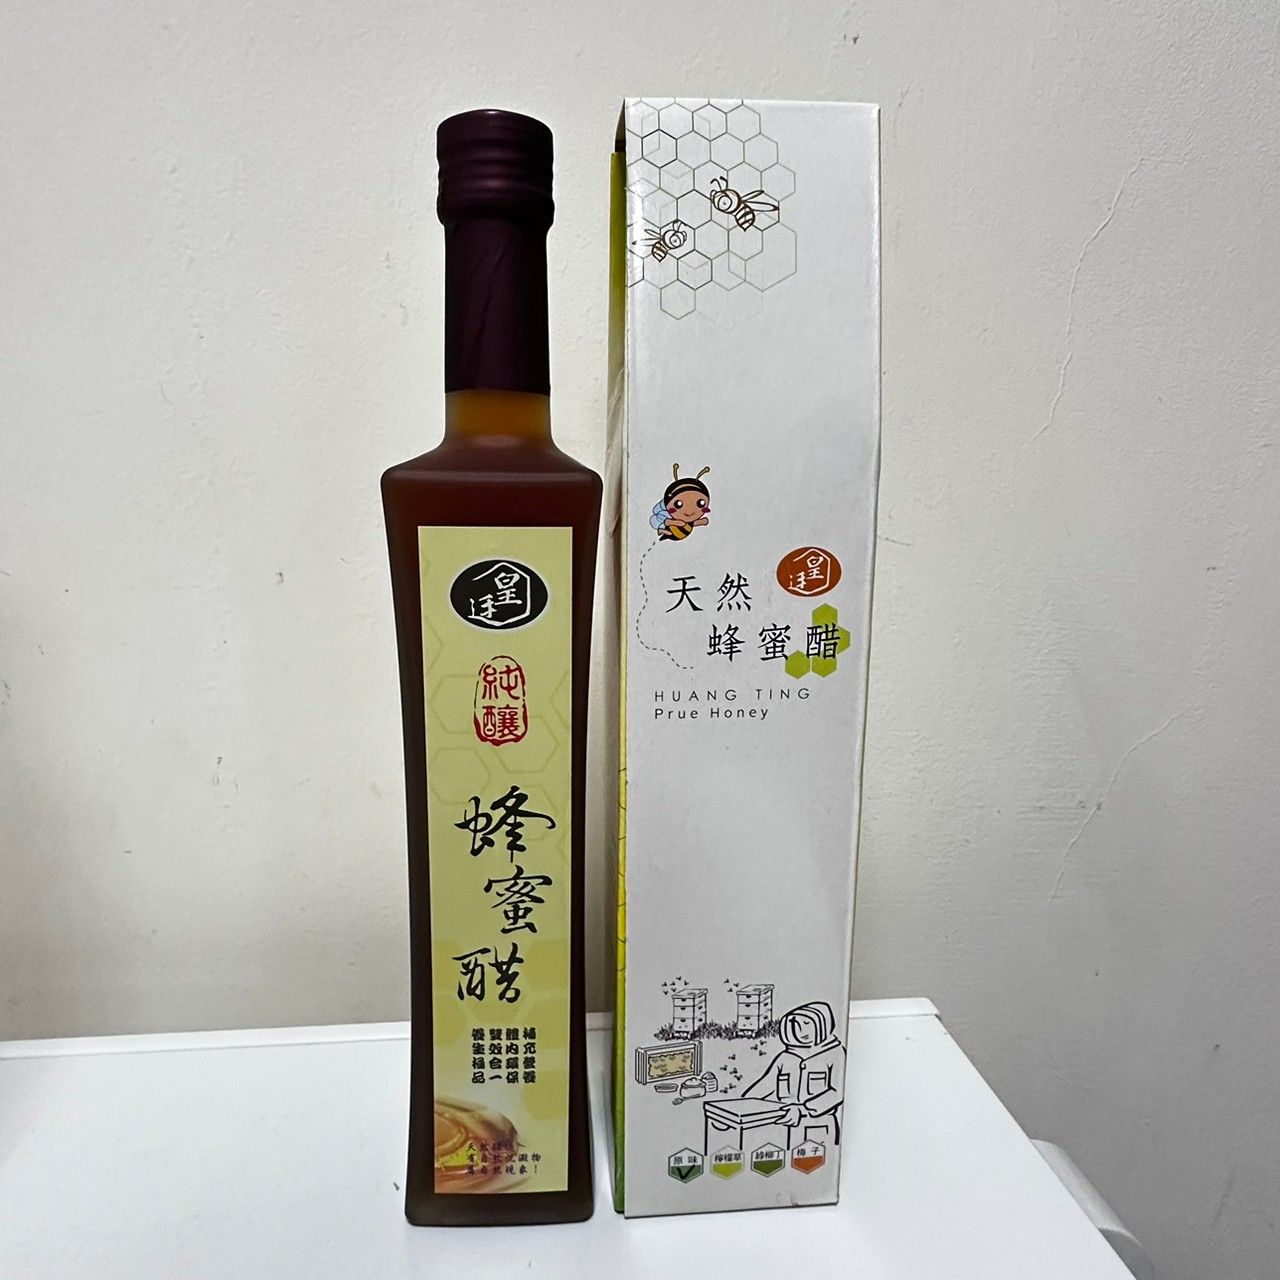 皇廷純釀蜂蜜醋500ml